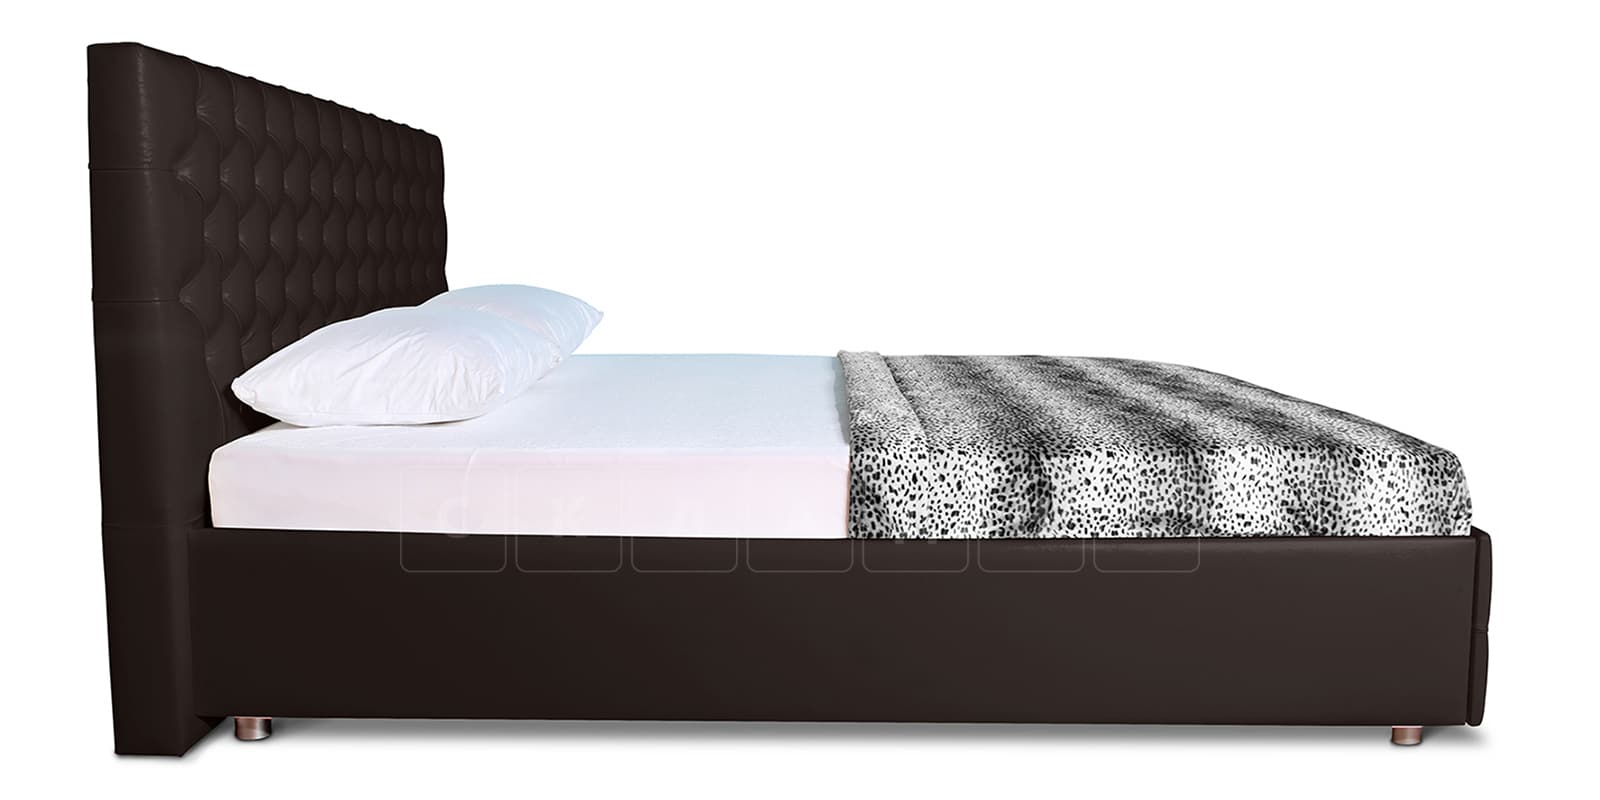 Мягкая кровать Малибу 160см экокожа шоколадного цвета вариант 4 фото 4 | интернет-магазин Складно